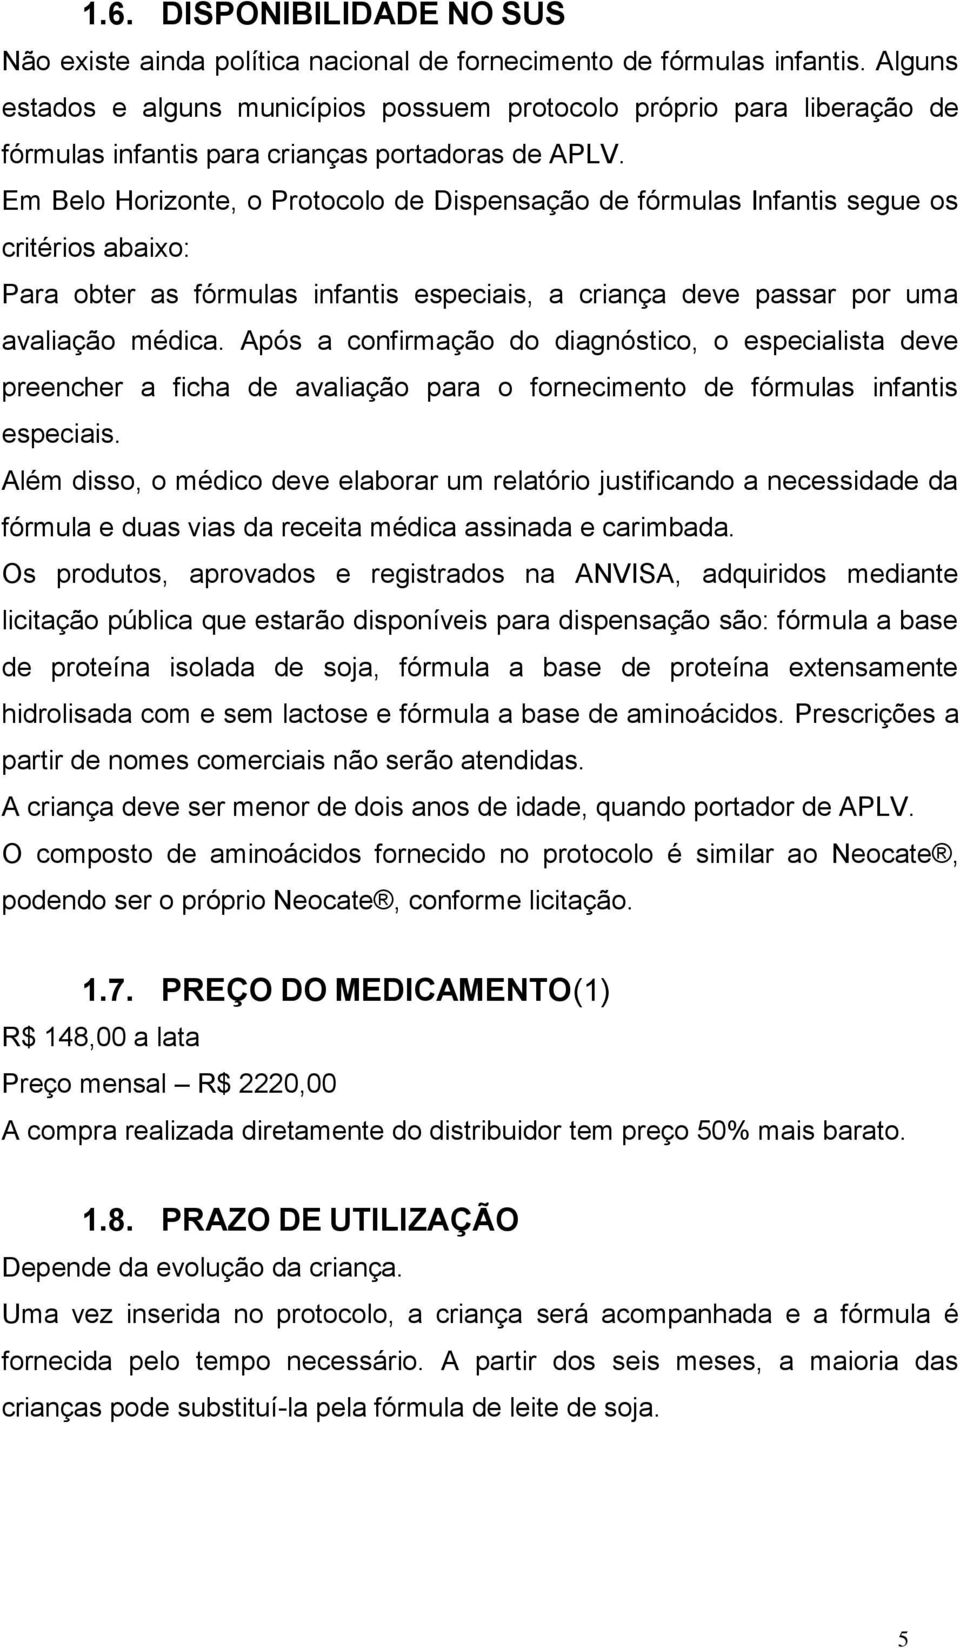 Em Belo Horizonte, o Protocolo de Dispensação de fórmulas Infantis segue os critérios abaixo: Para obter as fórmulas infantis especiais, a criança deve passar por uma avaliação médica.